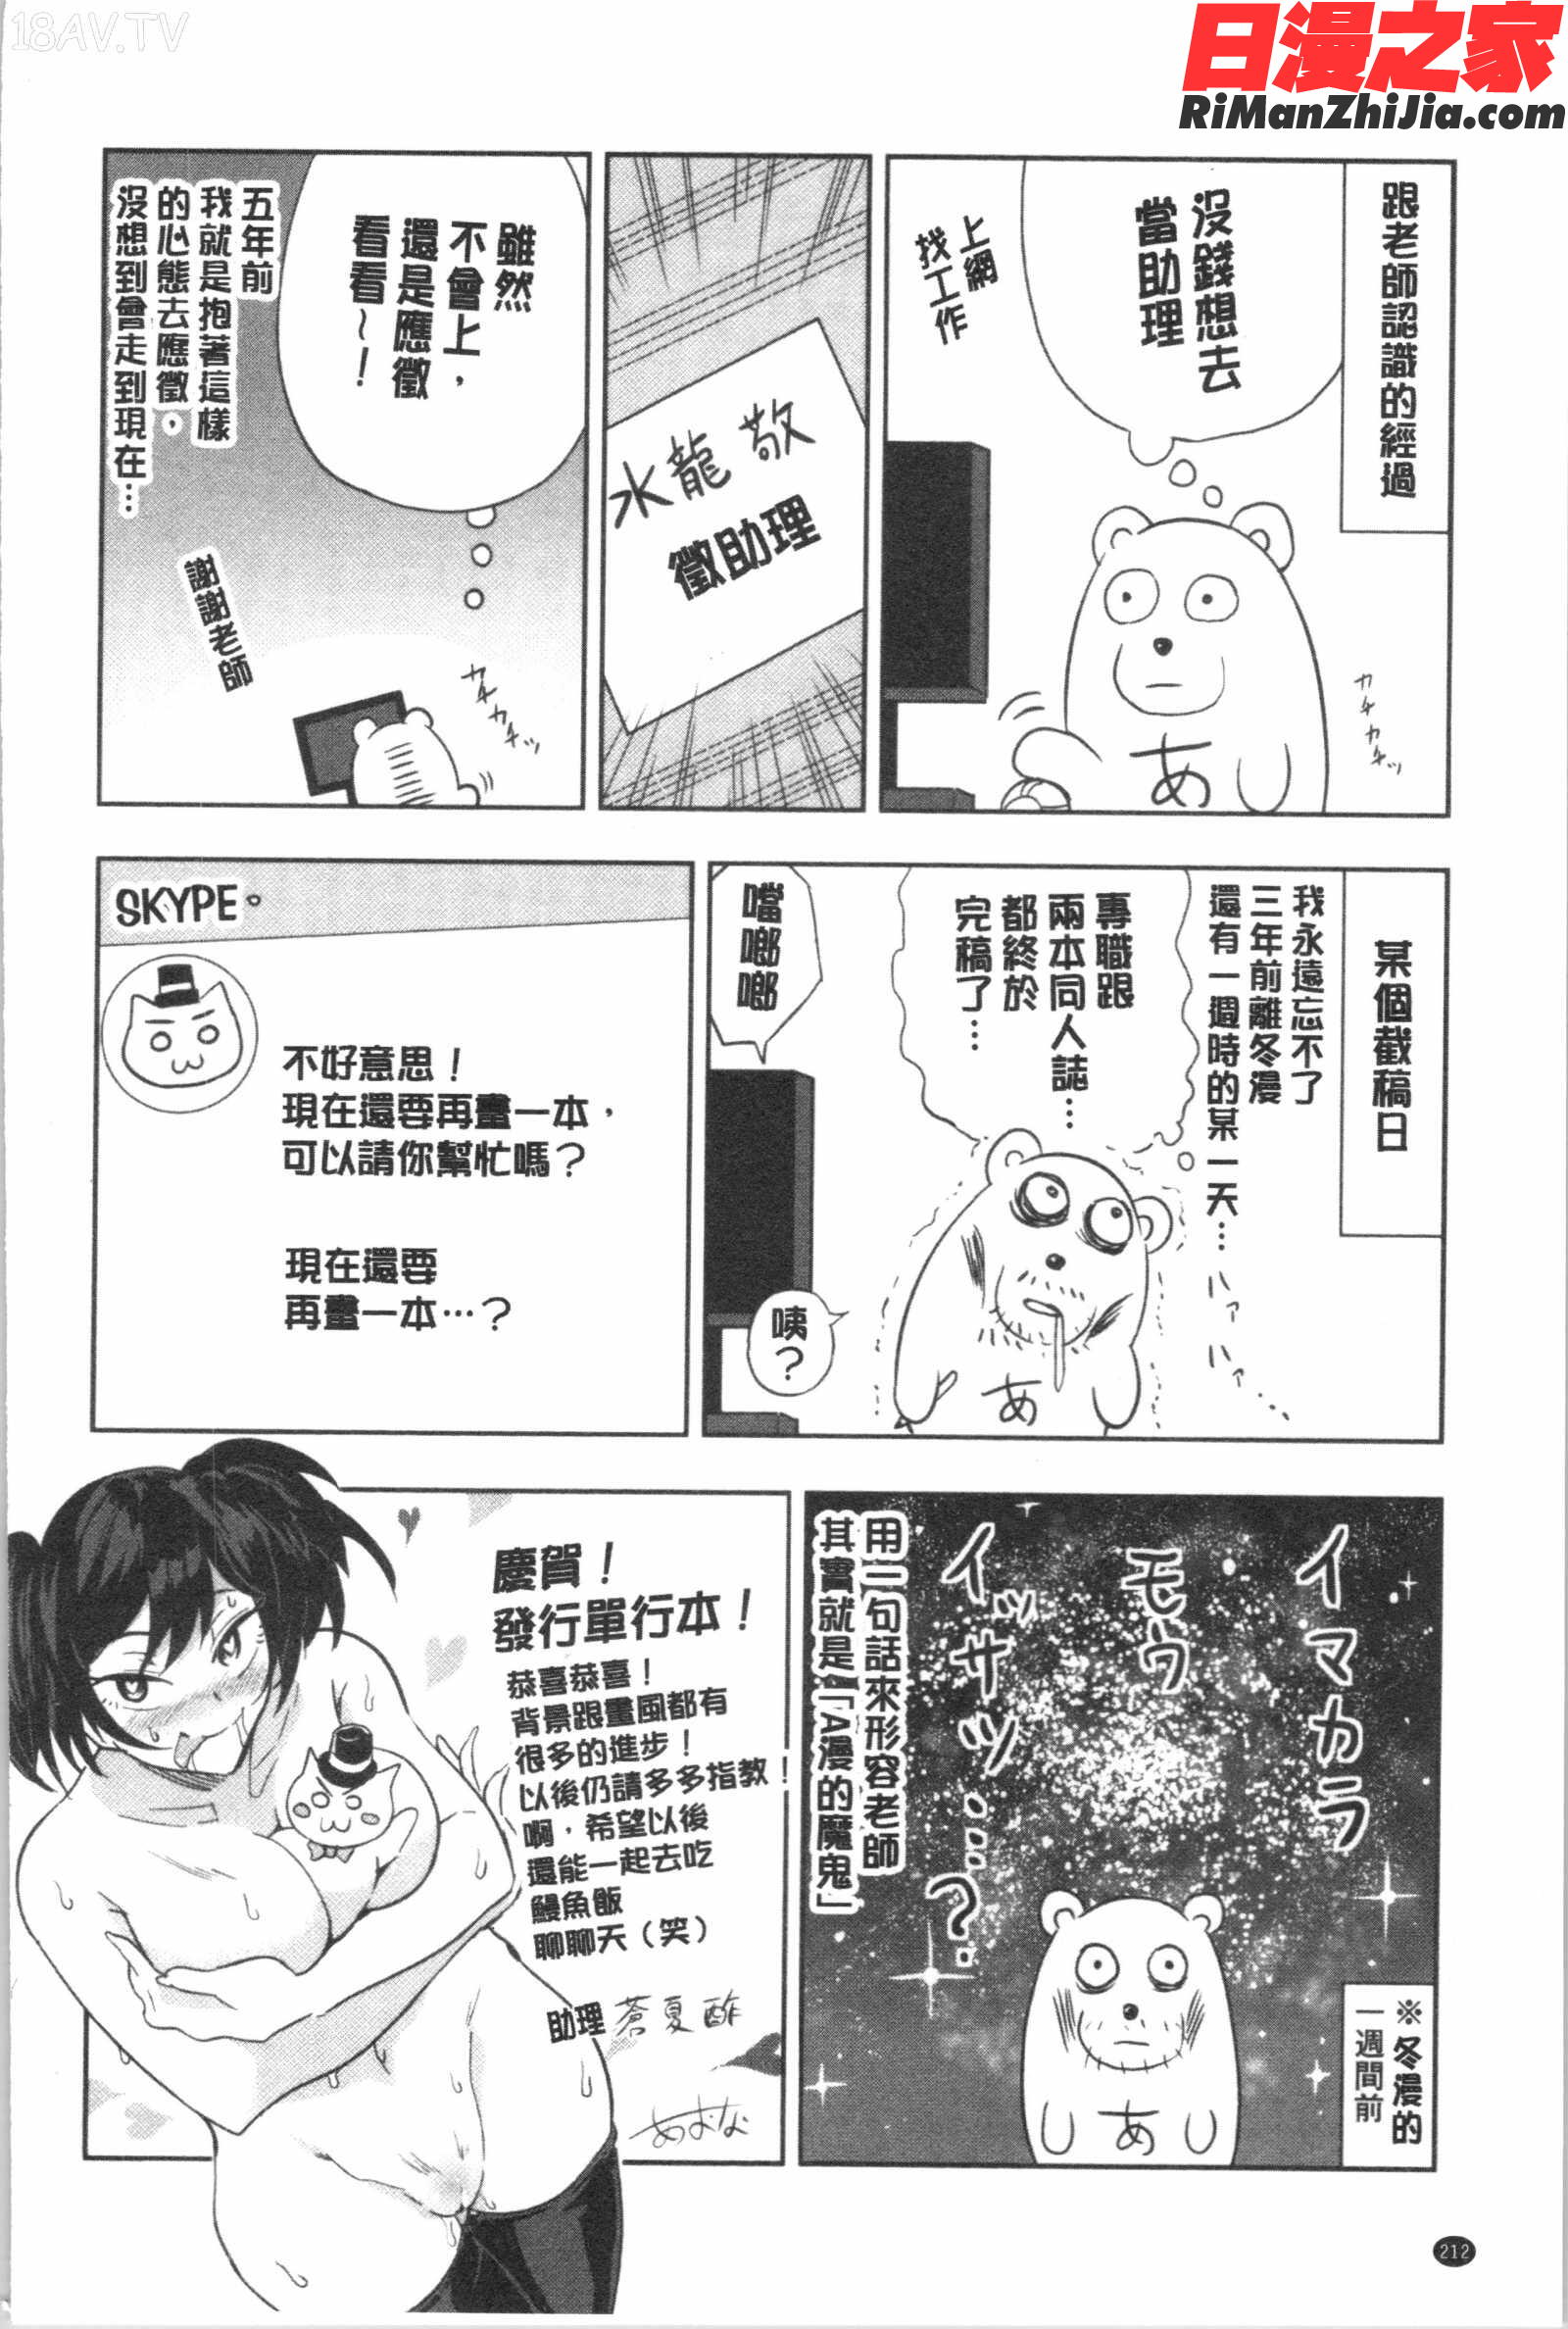 色欲INFINITE漫画 免费阅读 整部漫画 214.jpg